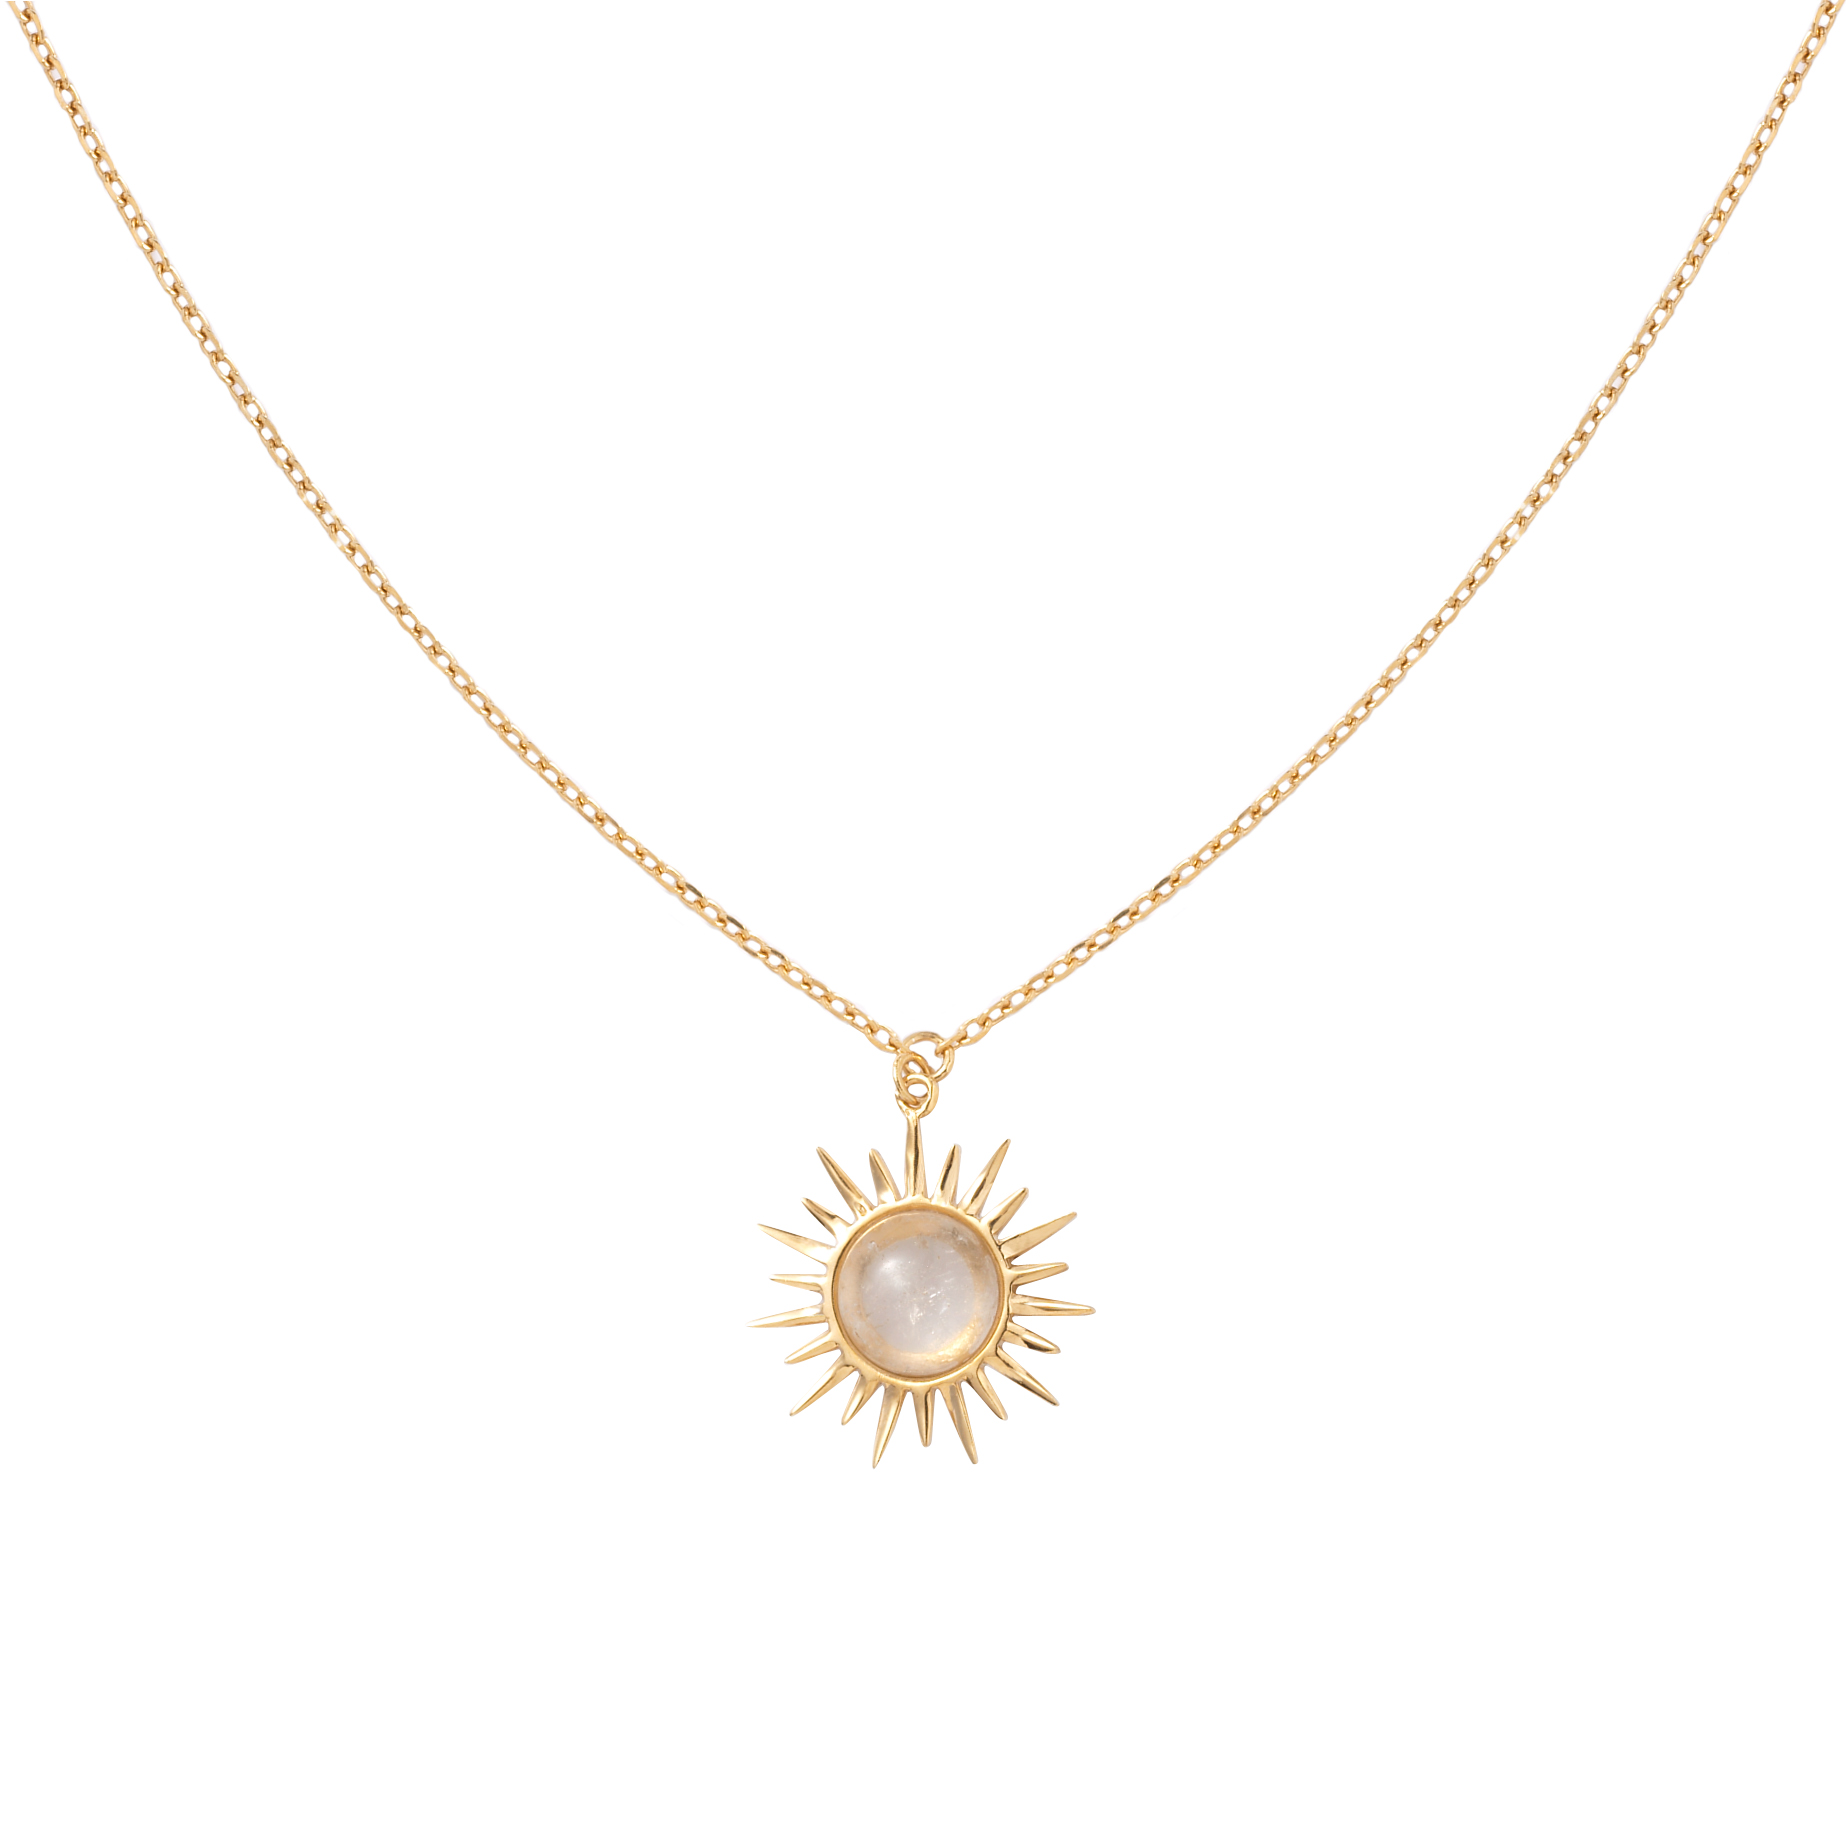 Sun with quartz necklace - Anka Krystyniak